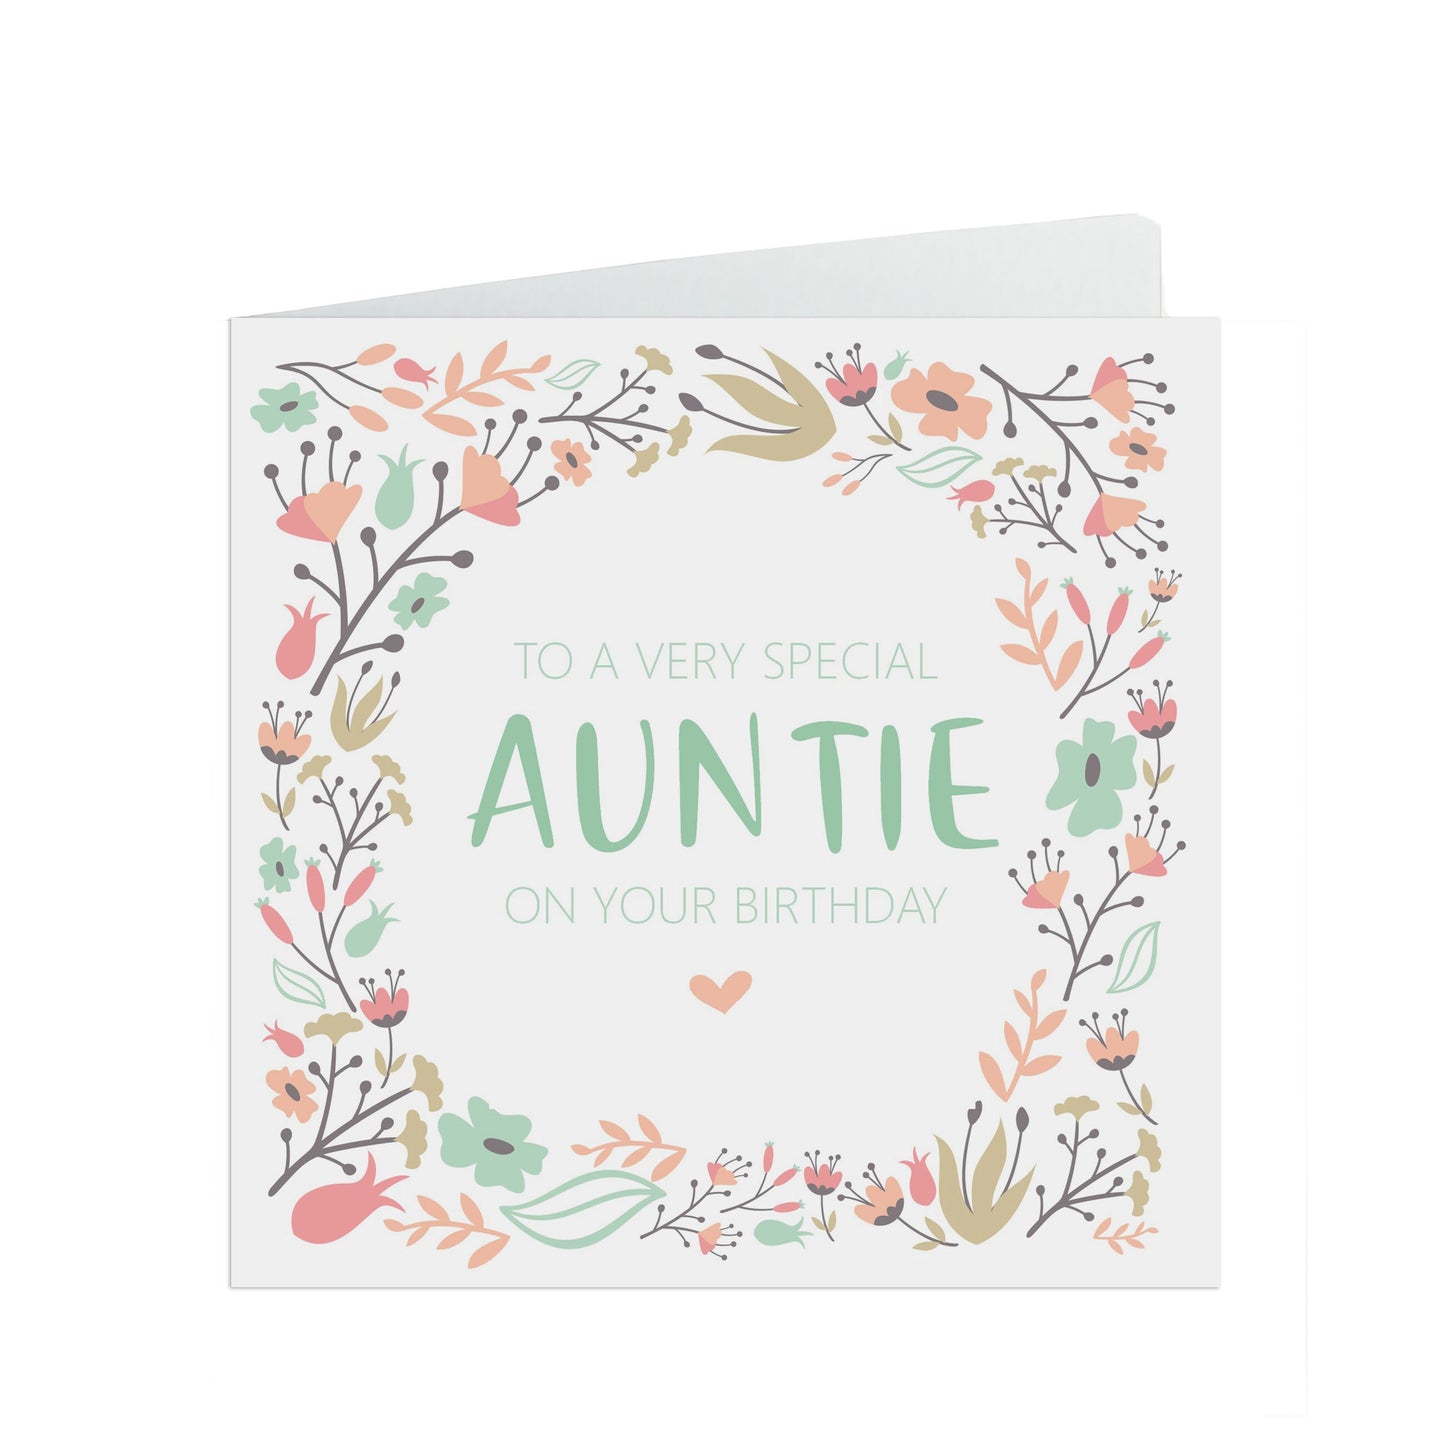 Auntie Birthday Card, Sage & Peach Flower Design